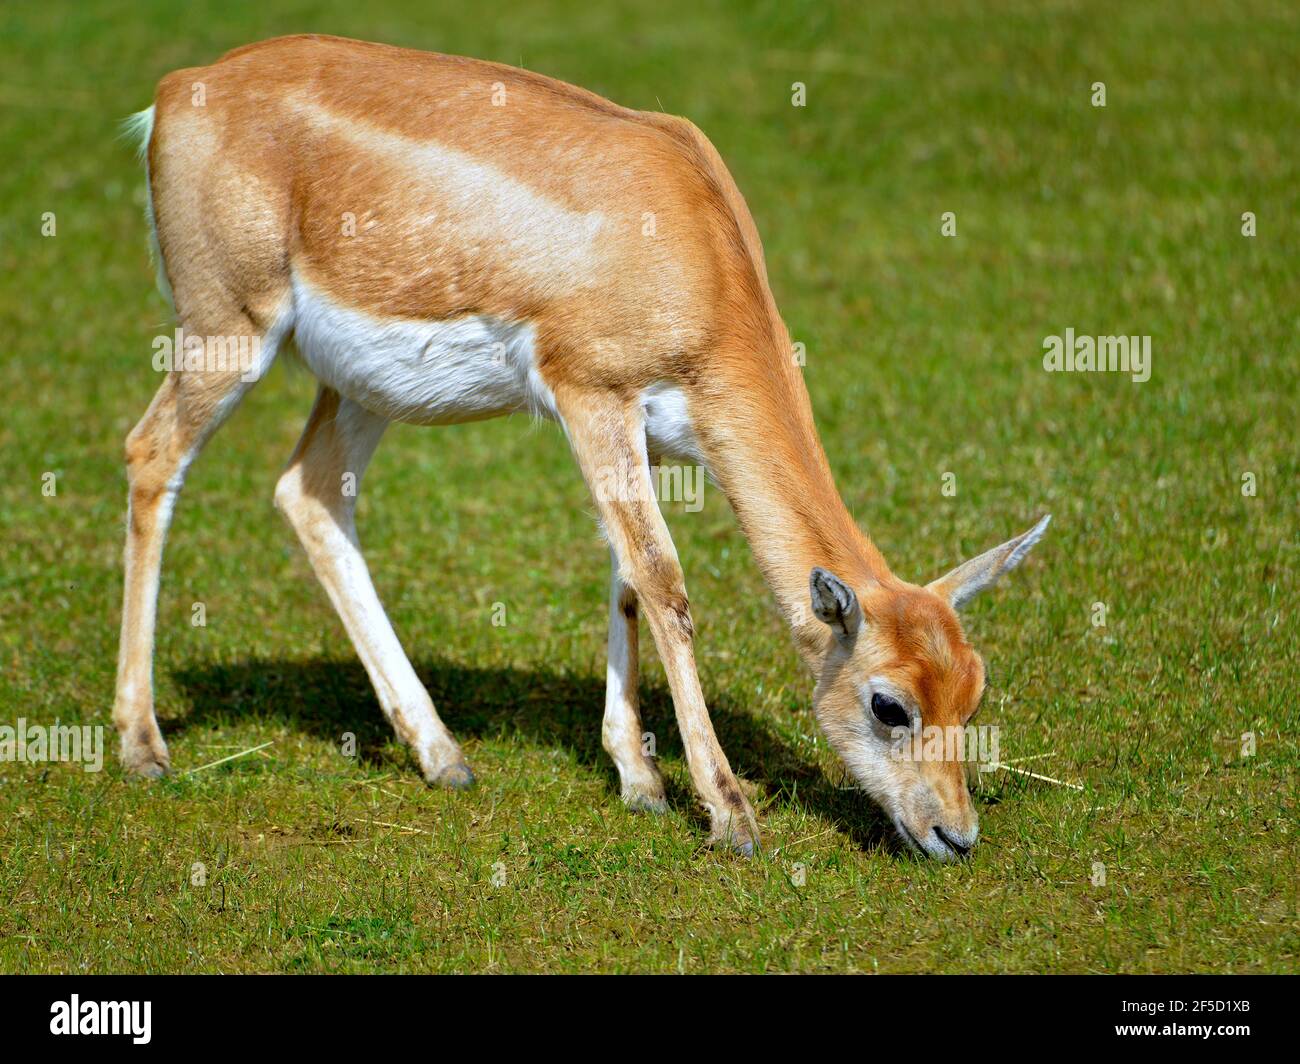 Le chanbuck femelle (Antilope cervicapra), également connu sous le nom d'antilope indienne, est un antilope originaire de l'Inde et du Népal, qui broutage et vu de profil Banque D'Images